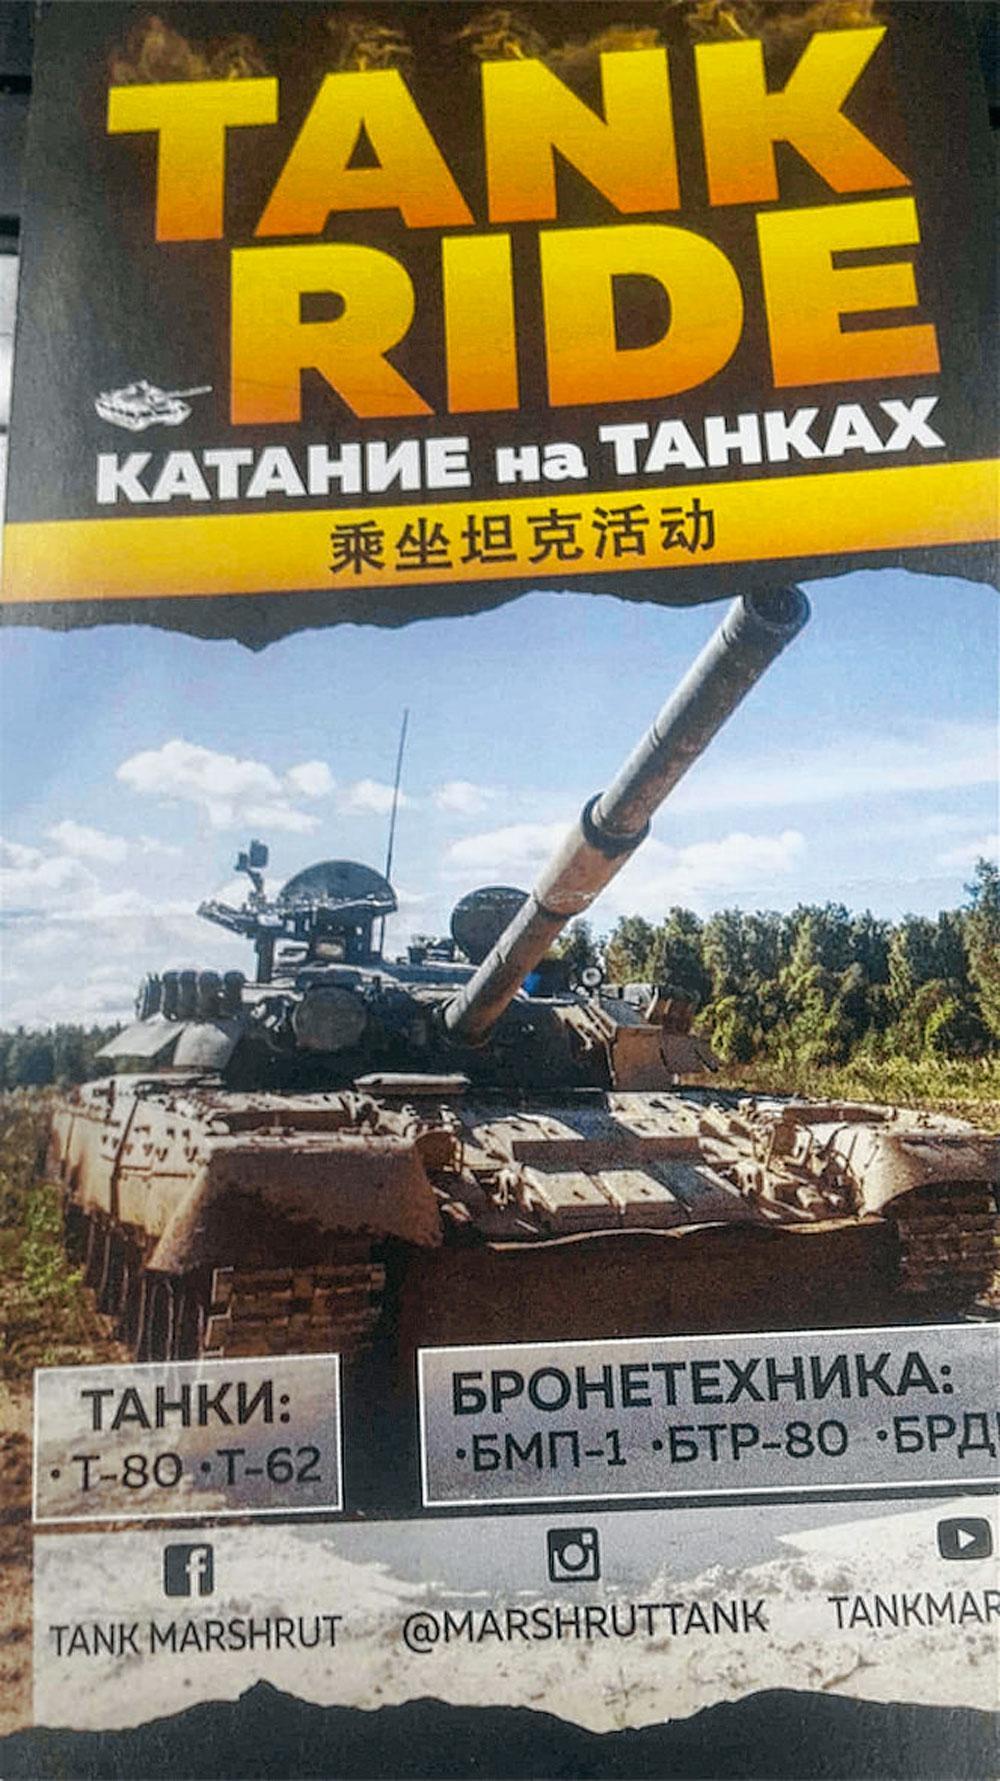 In de buurt van Moskou kan  je een echte tank huren en schieten met de bewapening, zo vertelt dit foldertje.